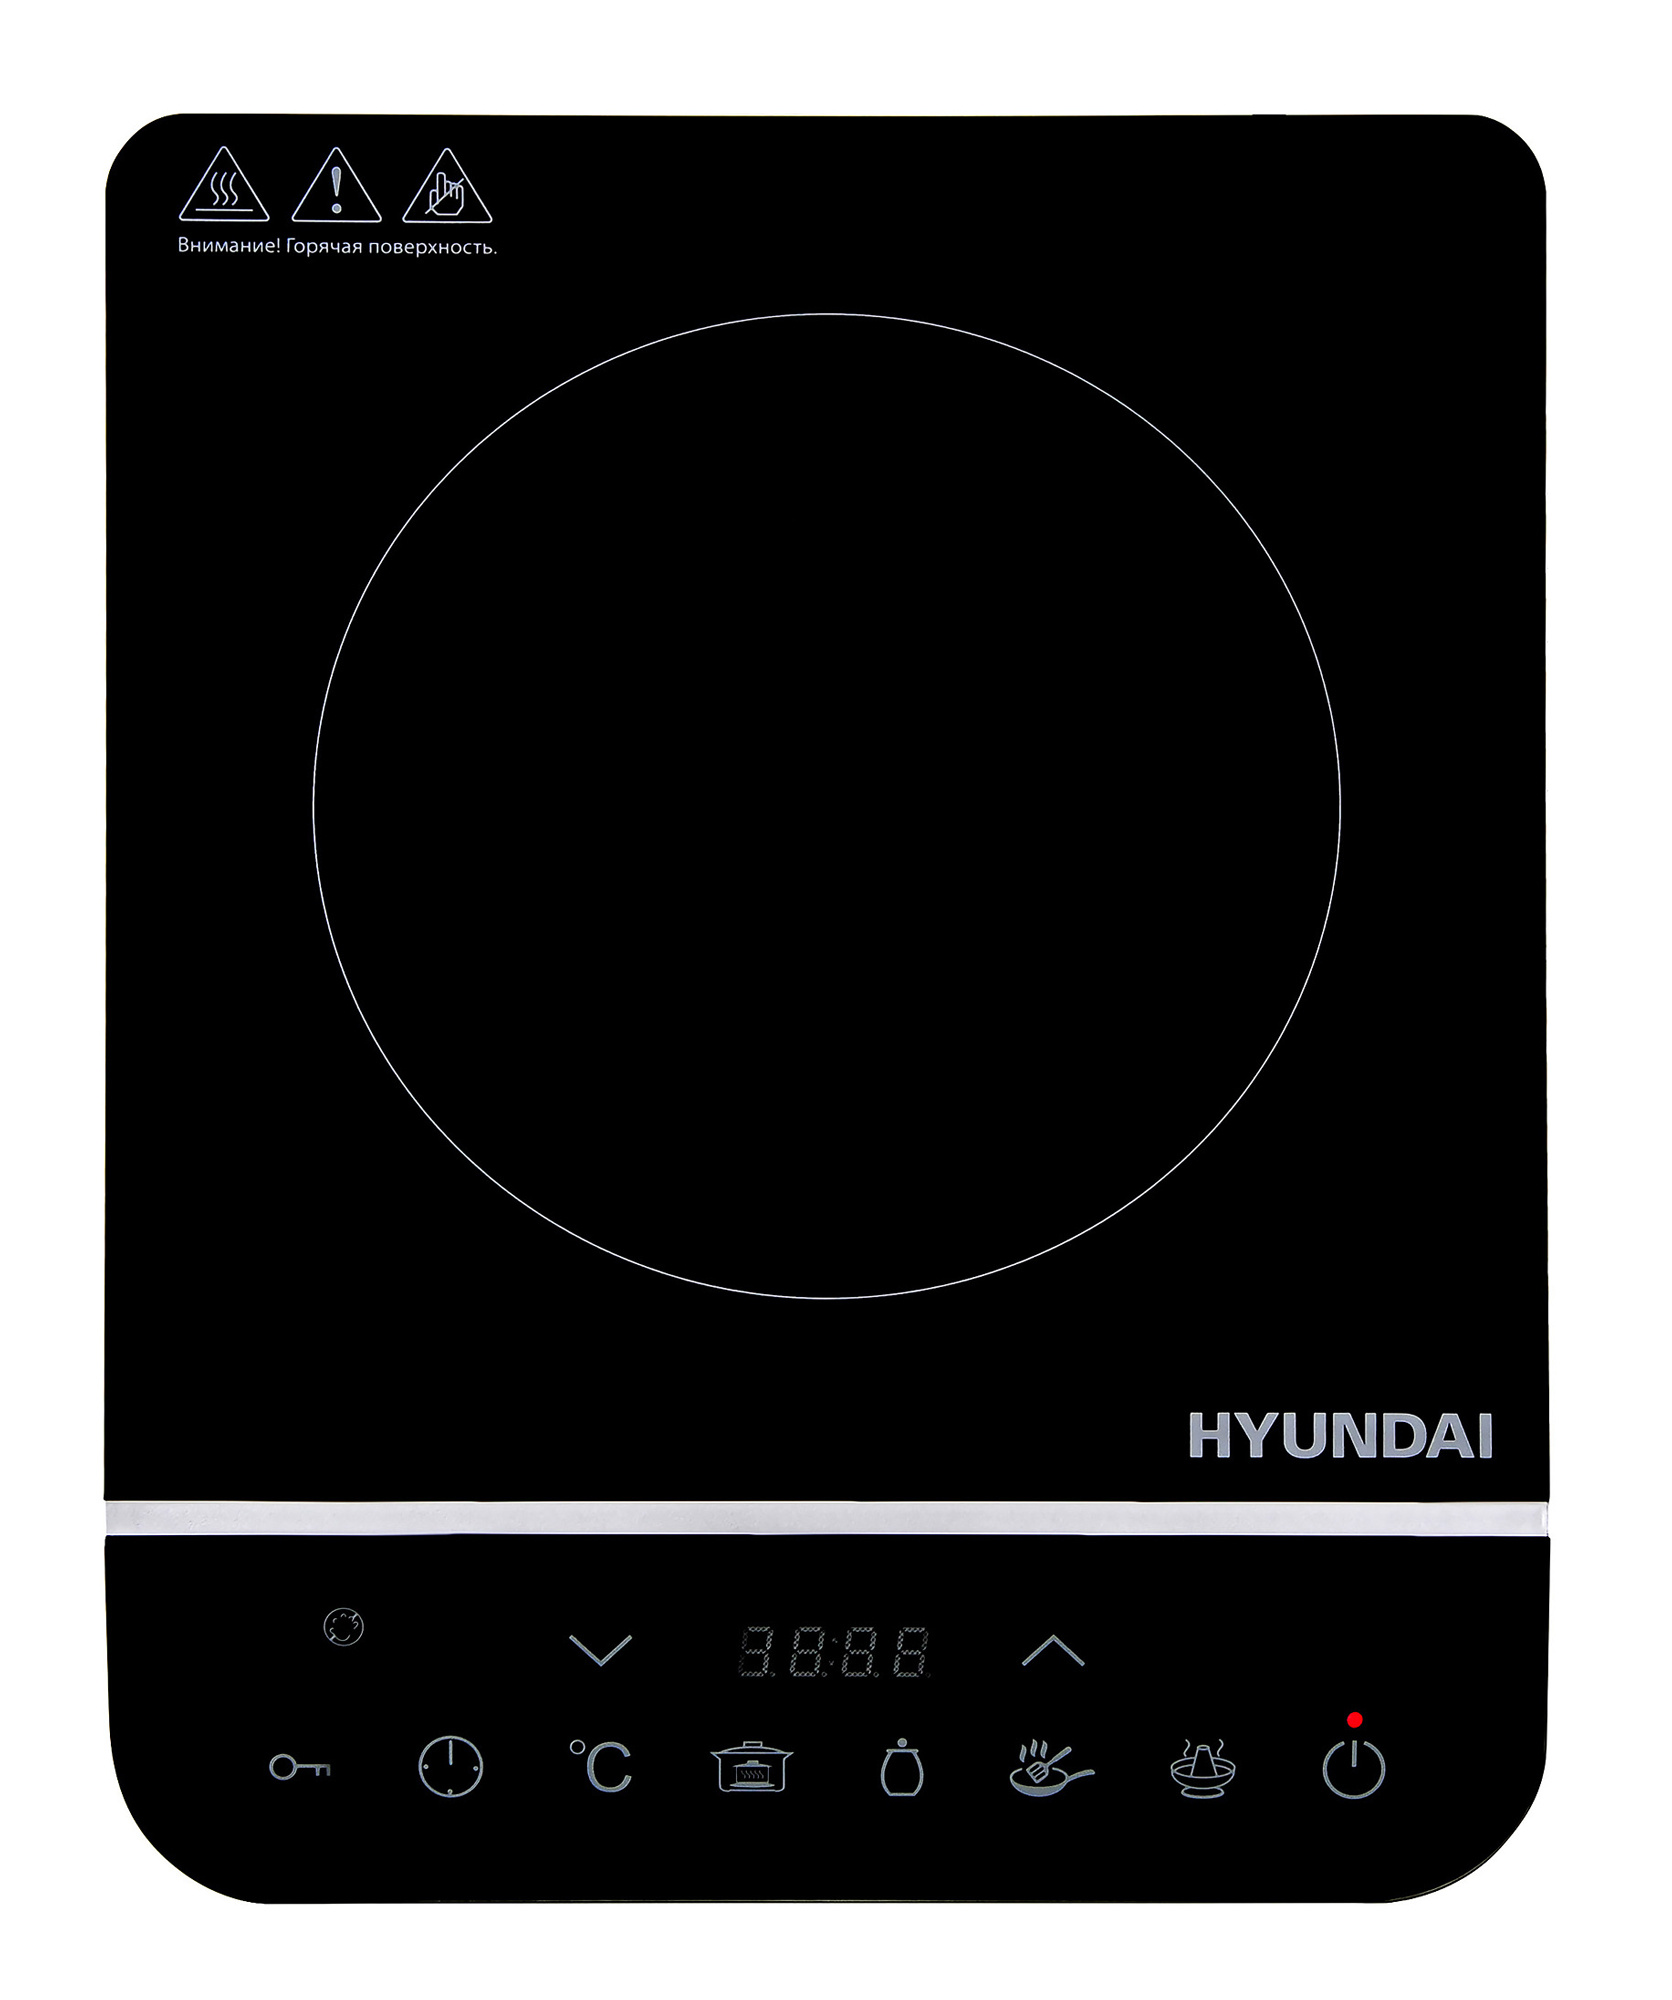   Hyundai HYC-0104   ()